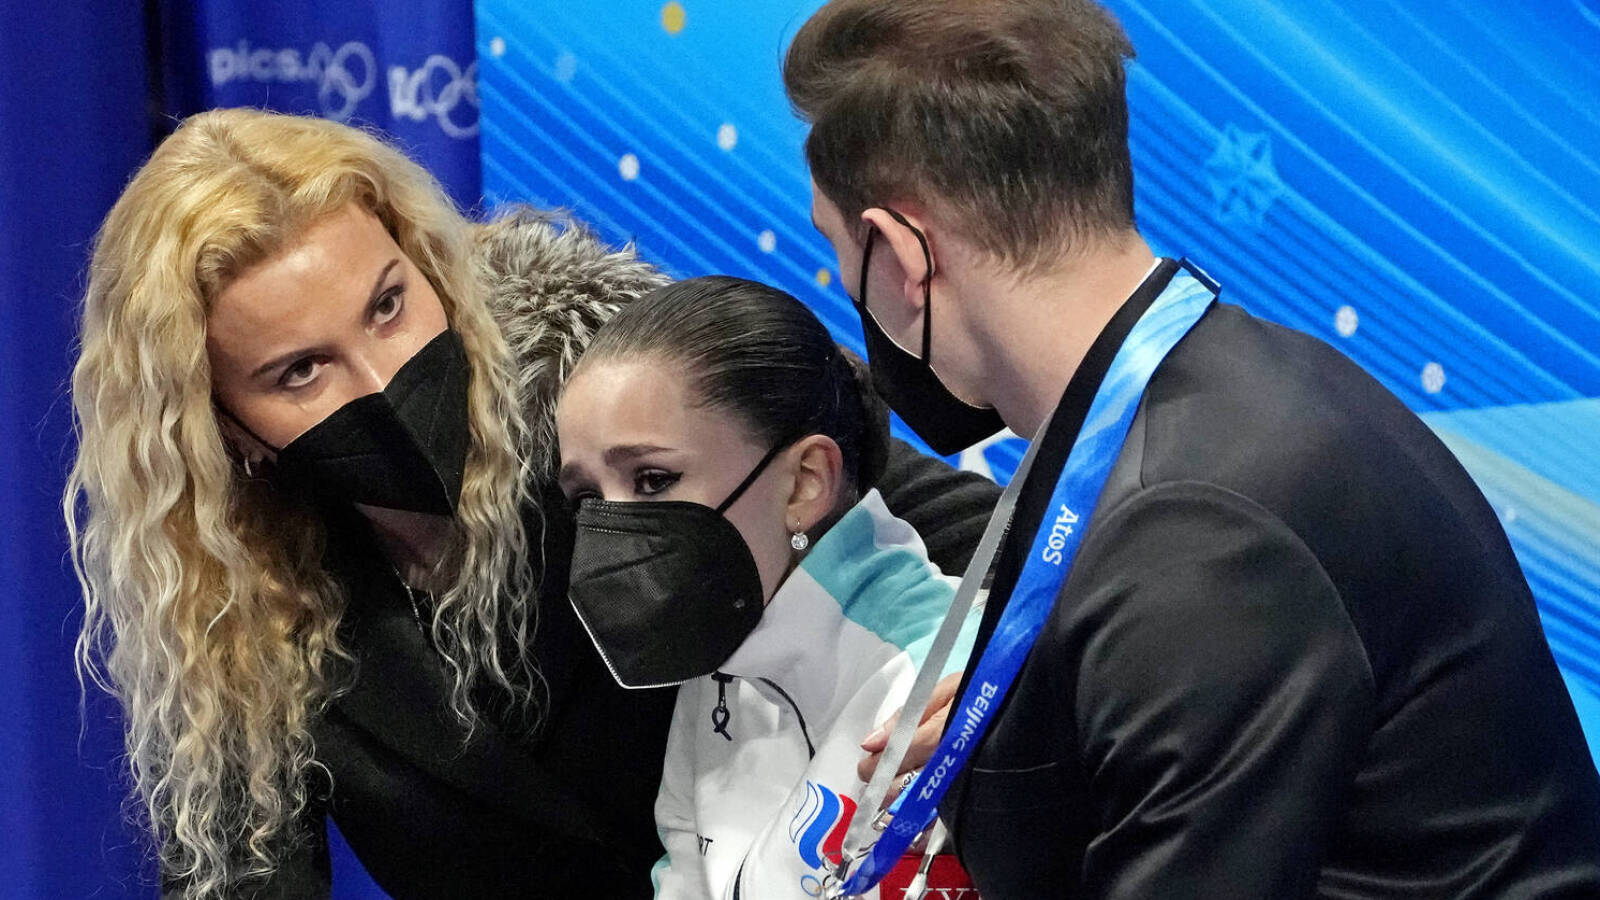 IOC prez rips Russian coach for treatment of Kamila Valieva | Yardbarker